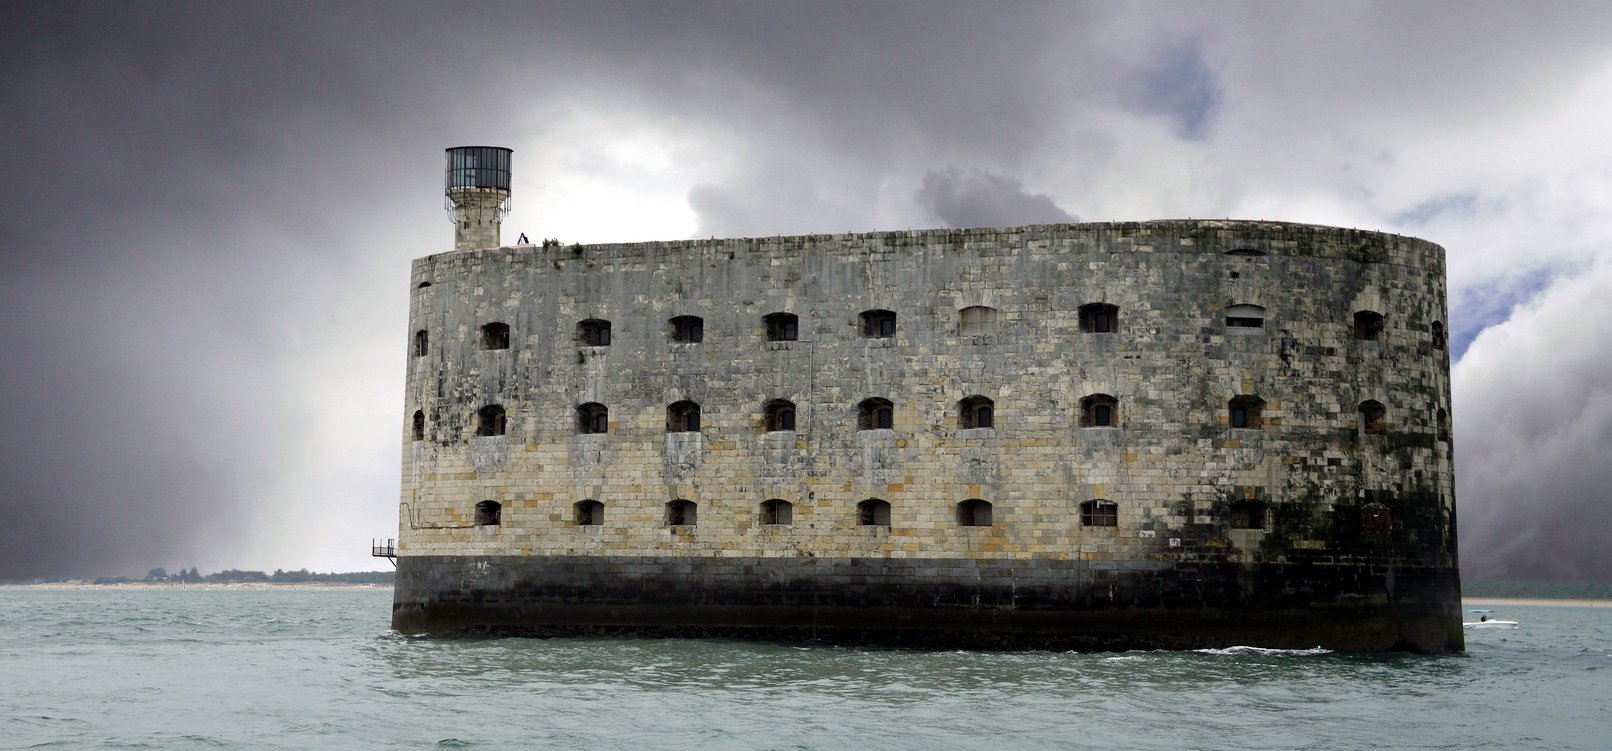 Így néz ki most a Fort Boyard, a tengeri erőd – képek